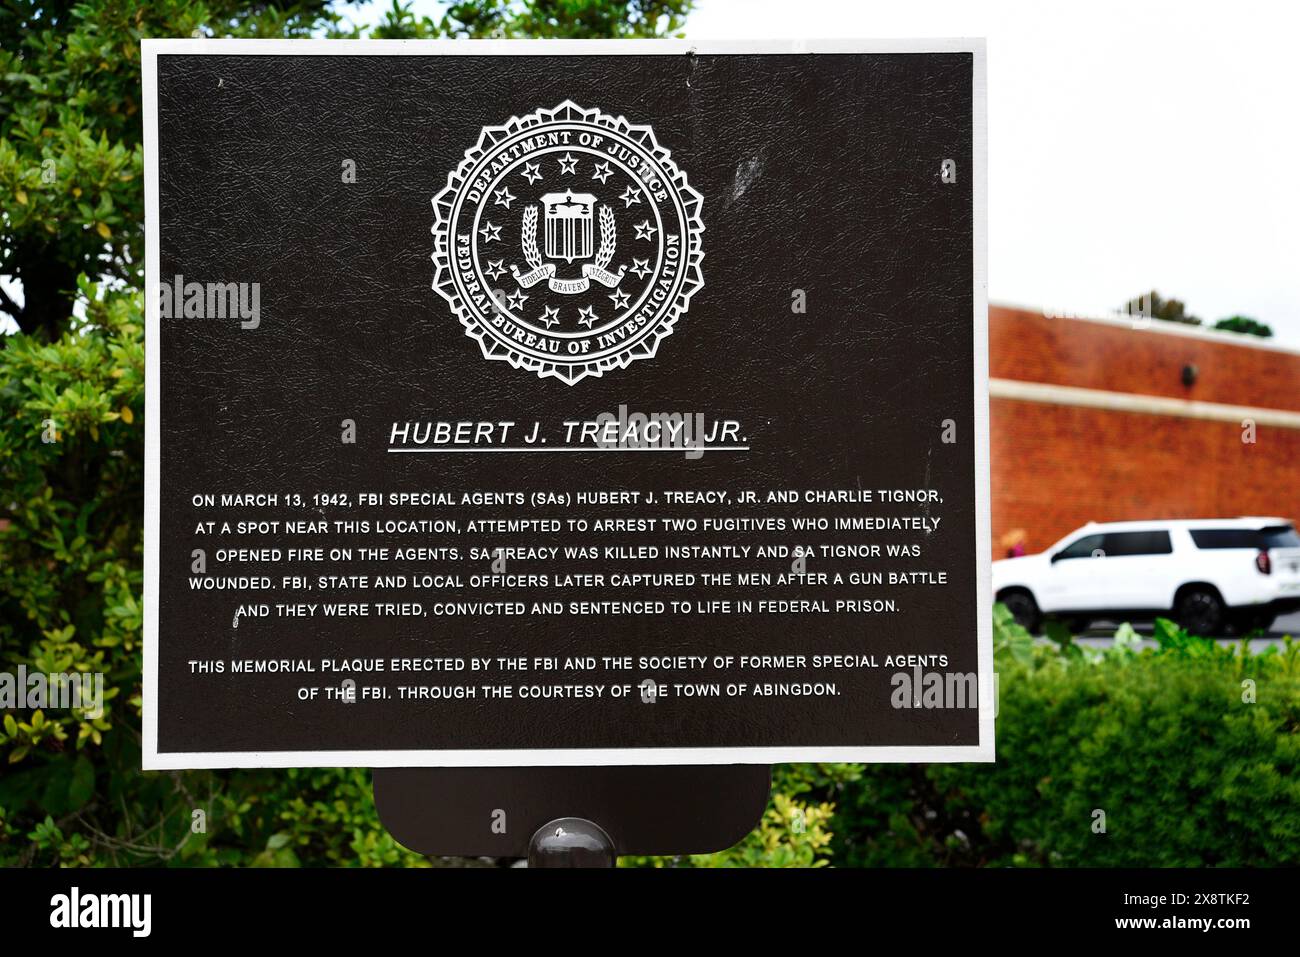 Historische Markierung in Abingdon, Virginia, platziert von der Gesellschaft der ehemaligen Agenten des FBI, um einen FBI-Agenten zu ehren, der 1942 im Dienst getötet wurde. Stockfoto